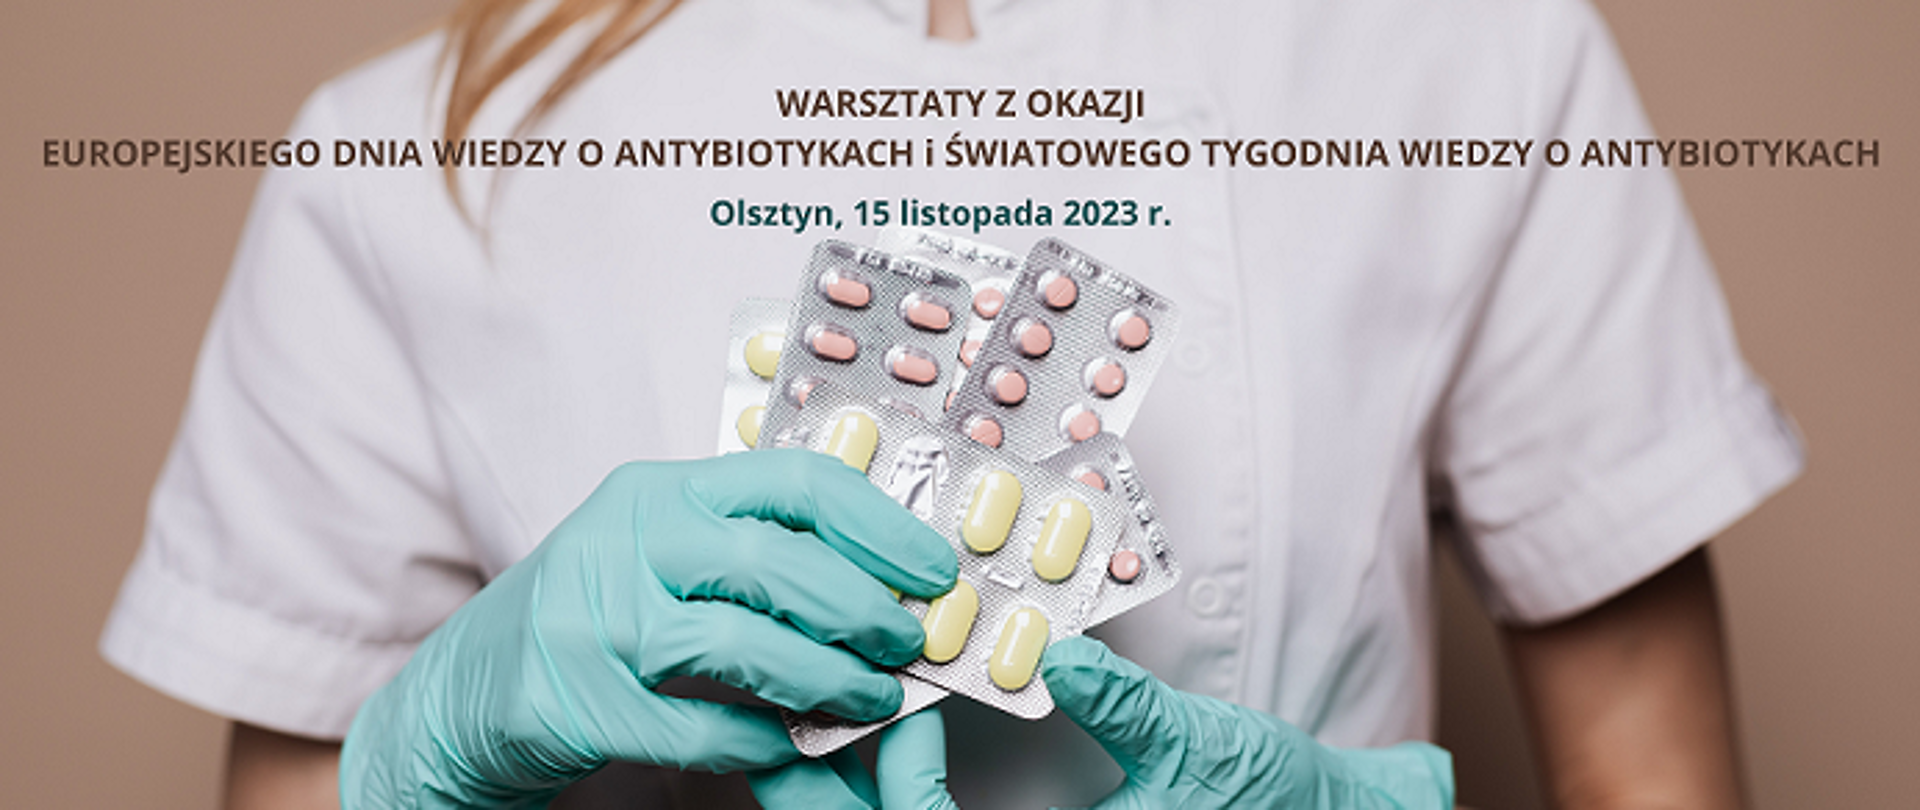 Na zdjęciu widoczny tors kobiety w białym fartuchu, która trzyma w dłoniach w rękawiczkach jednorazowych kilka opakowań antybiotyków. 